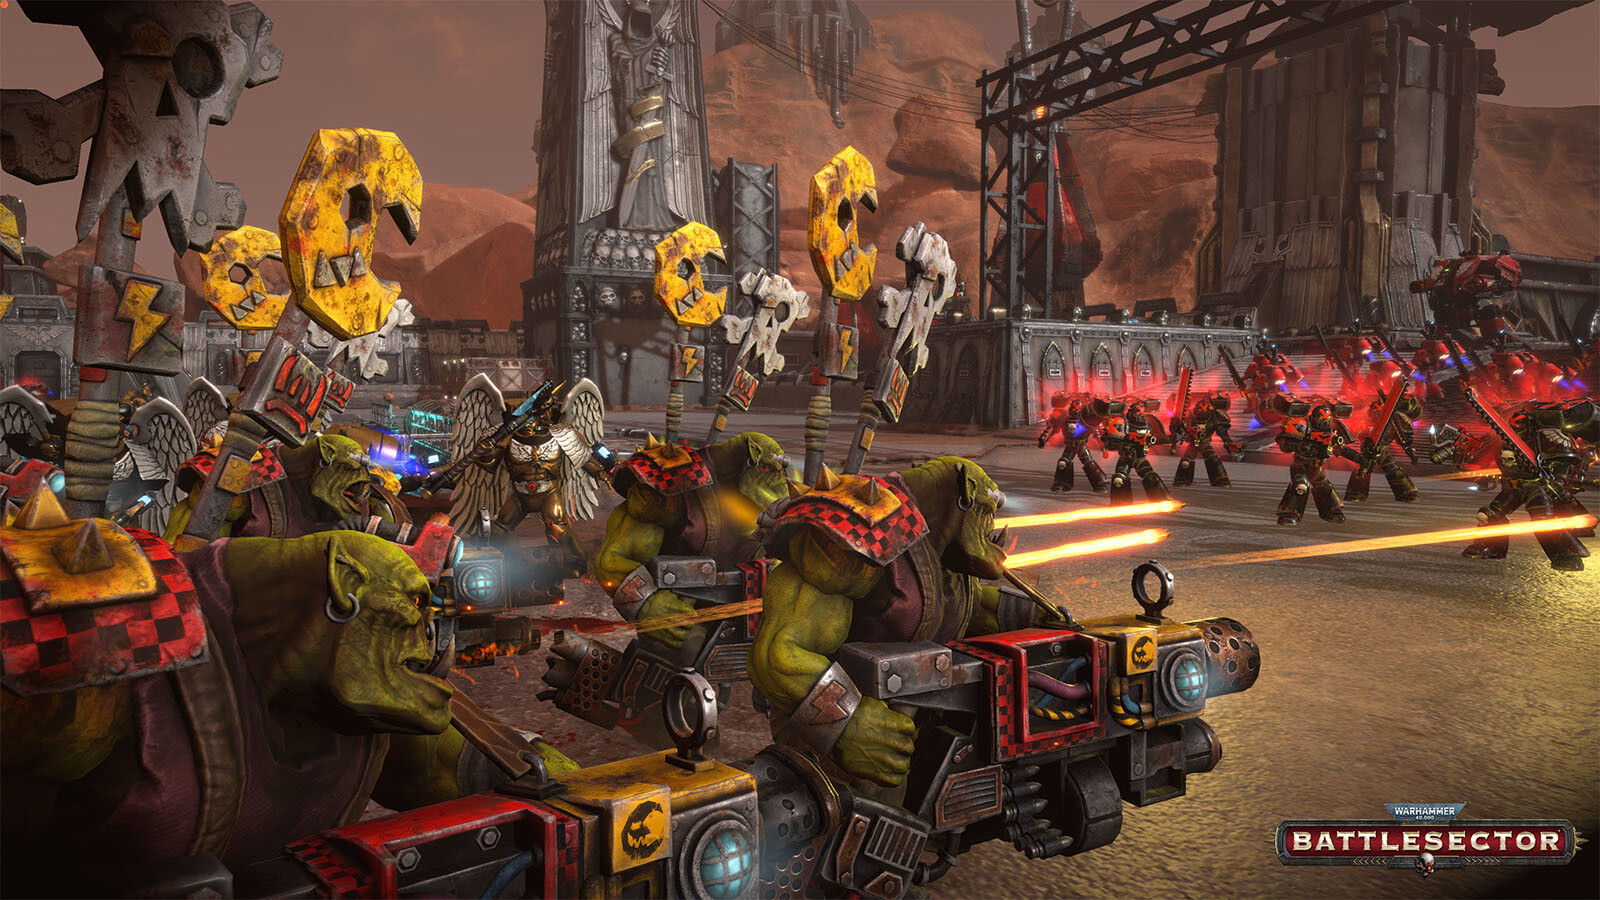 Warhammer 40,000: Battlesector - Orks on Steam